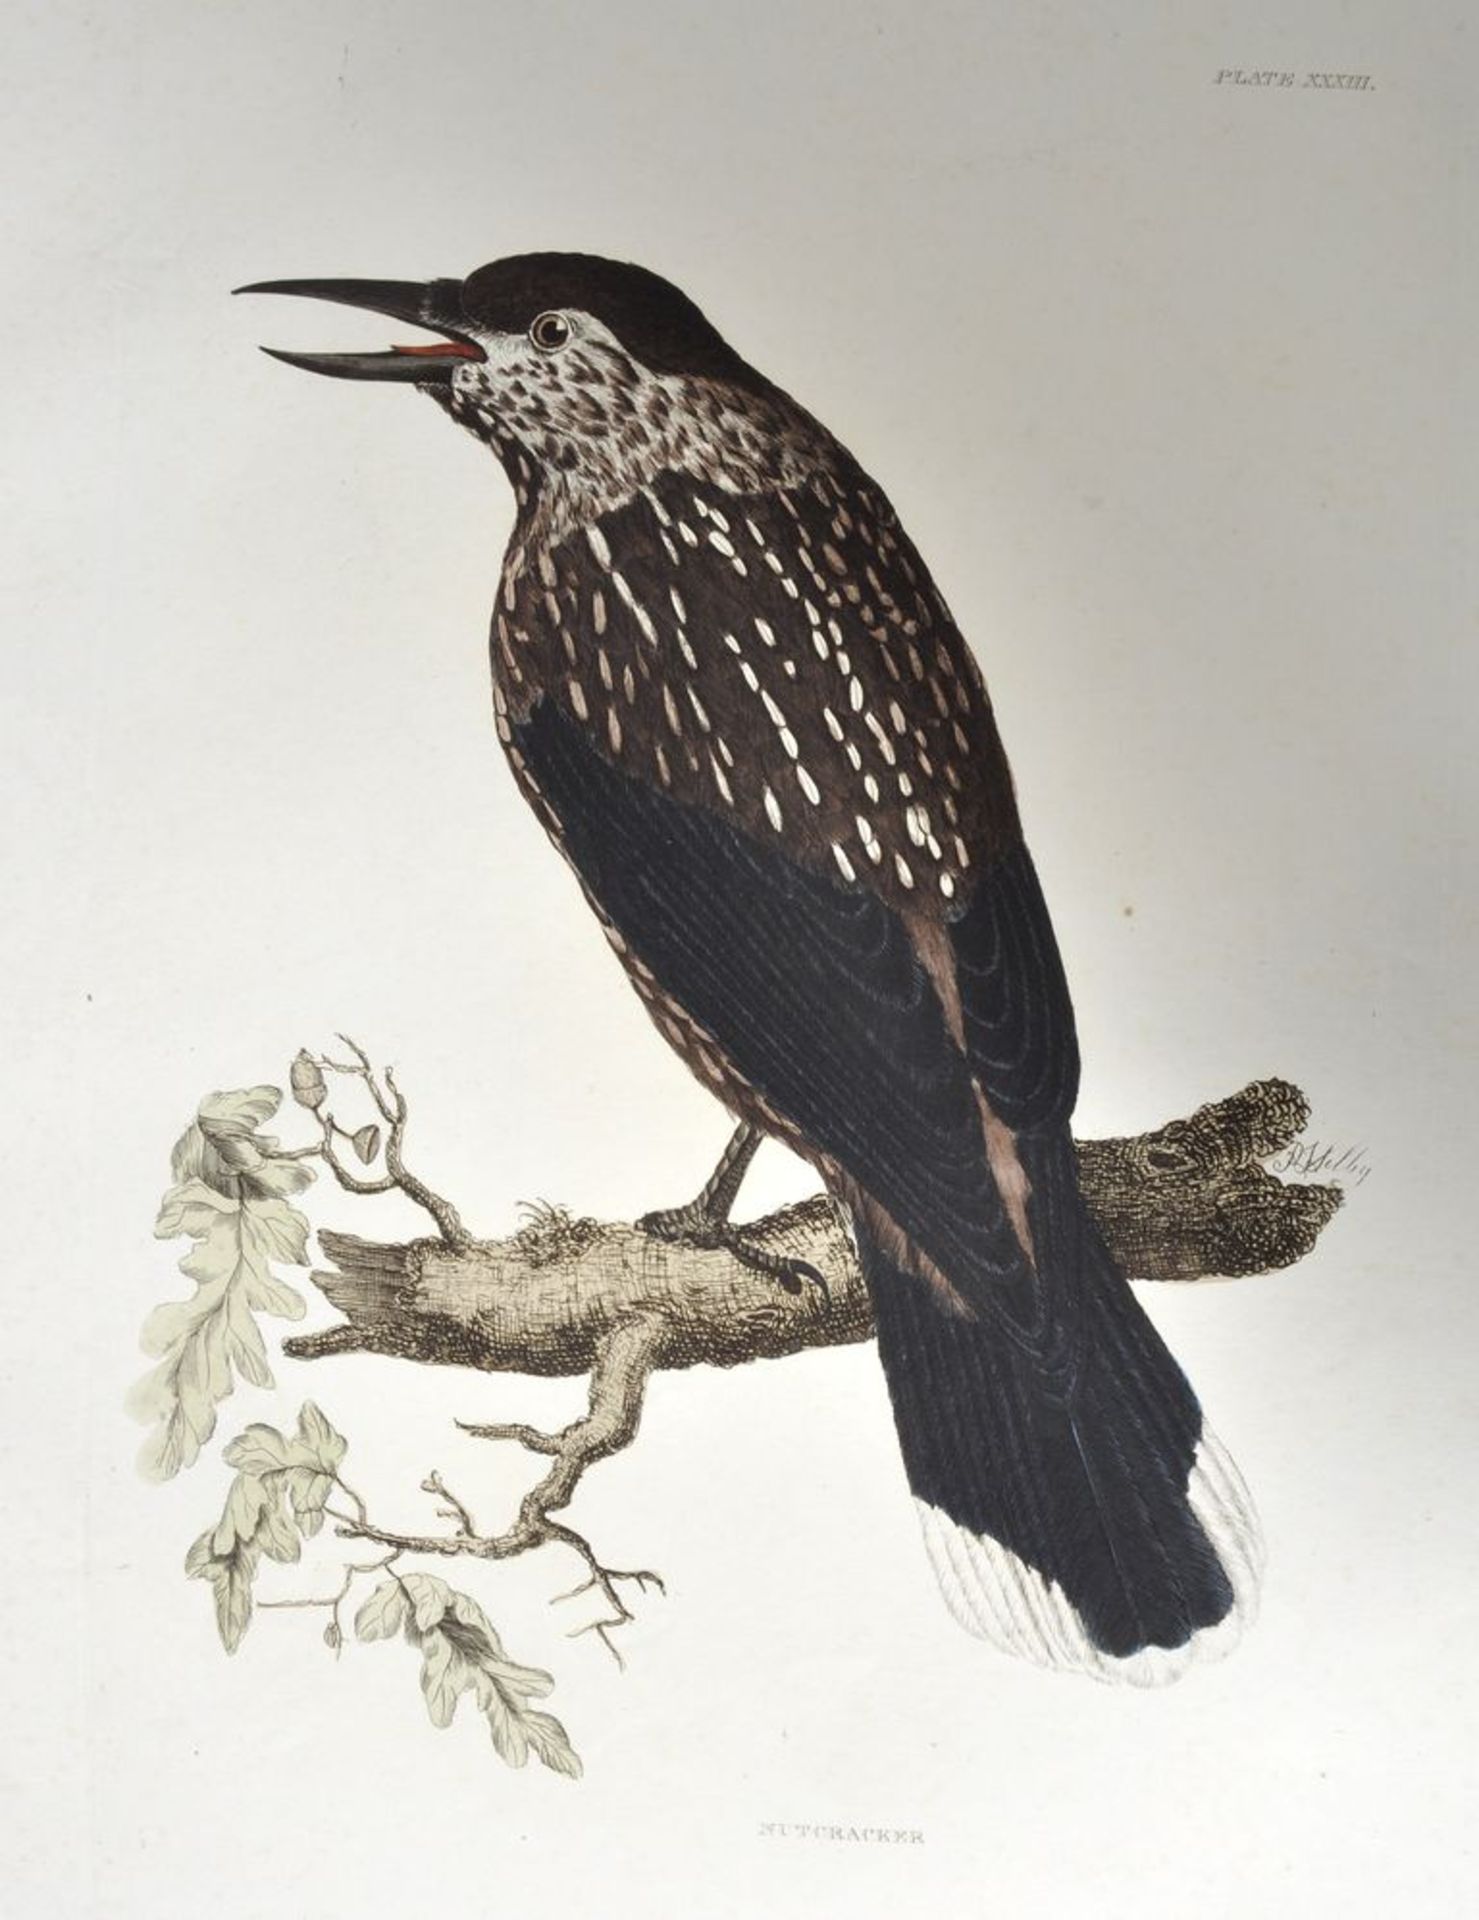 Selby's "British Ornithology". 13 Darstellungen. Kolorierte Kupferstiche nach Prideaux John Selby, - Bild 2 aus 7